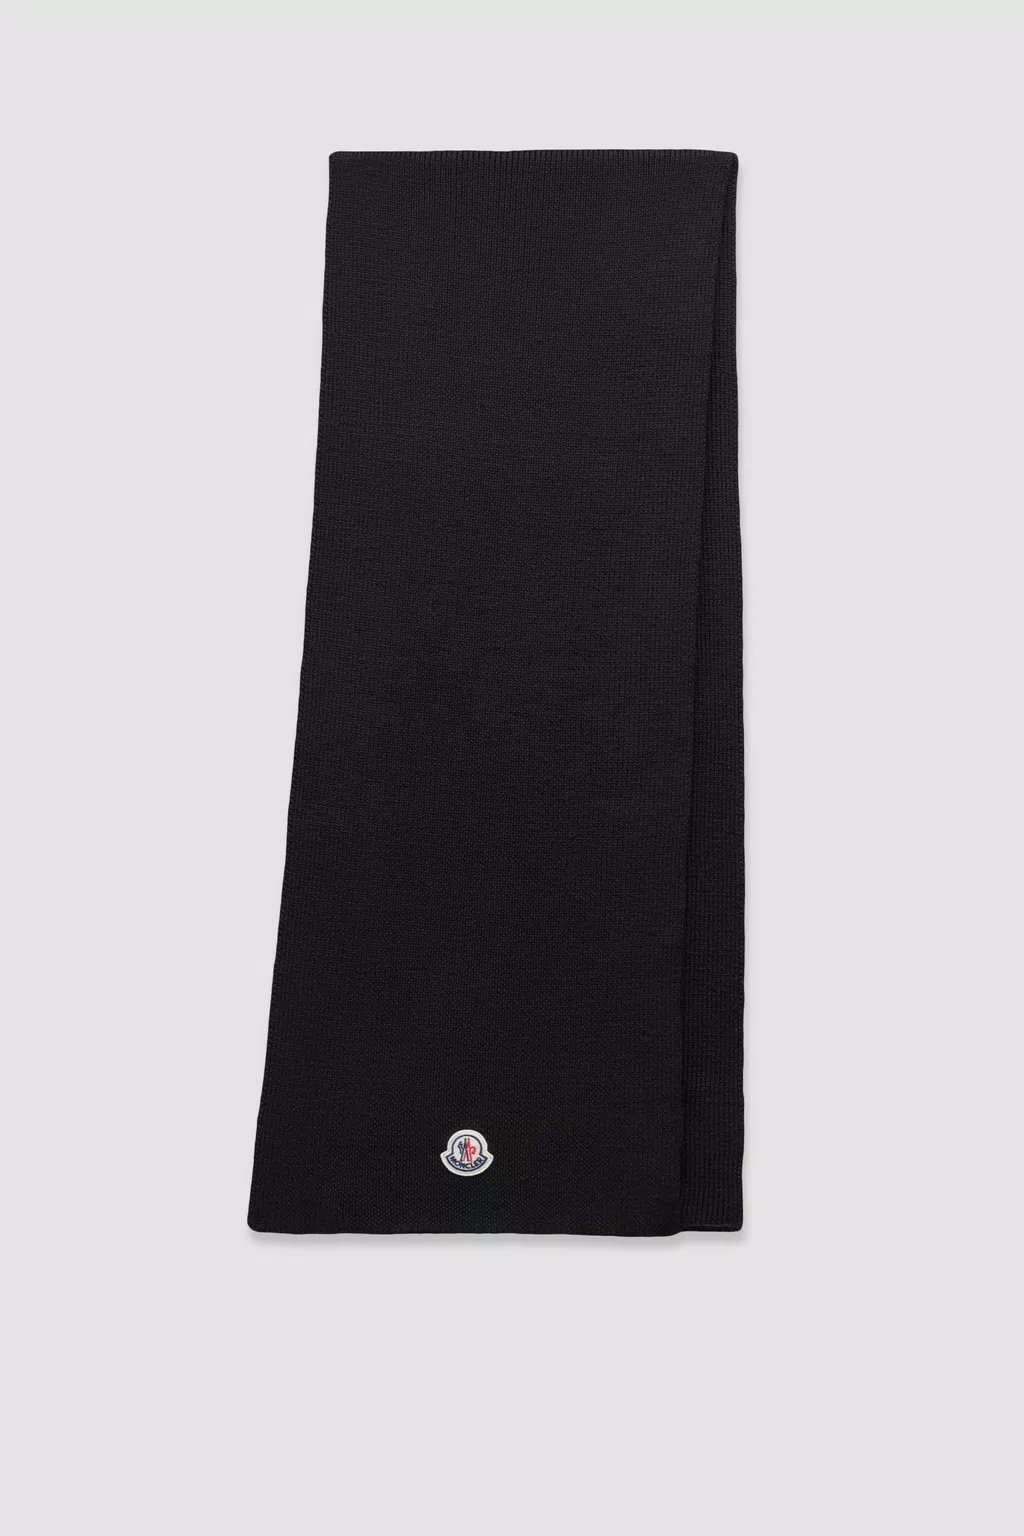 Шерстяной шарф Для мужчин Черный Moncler 1